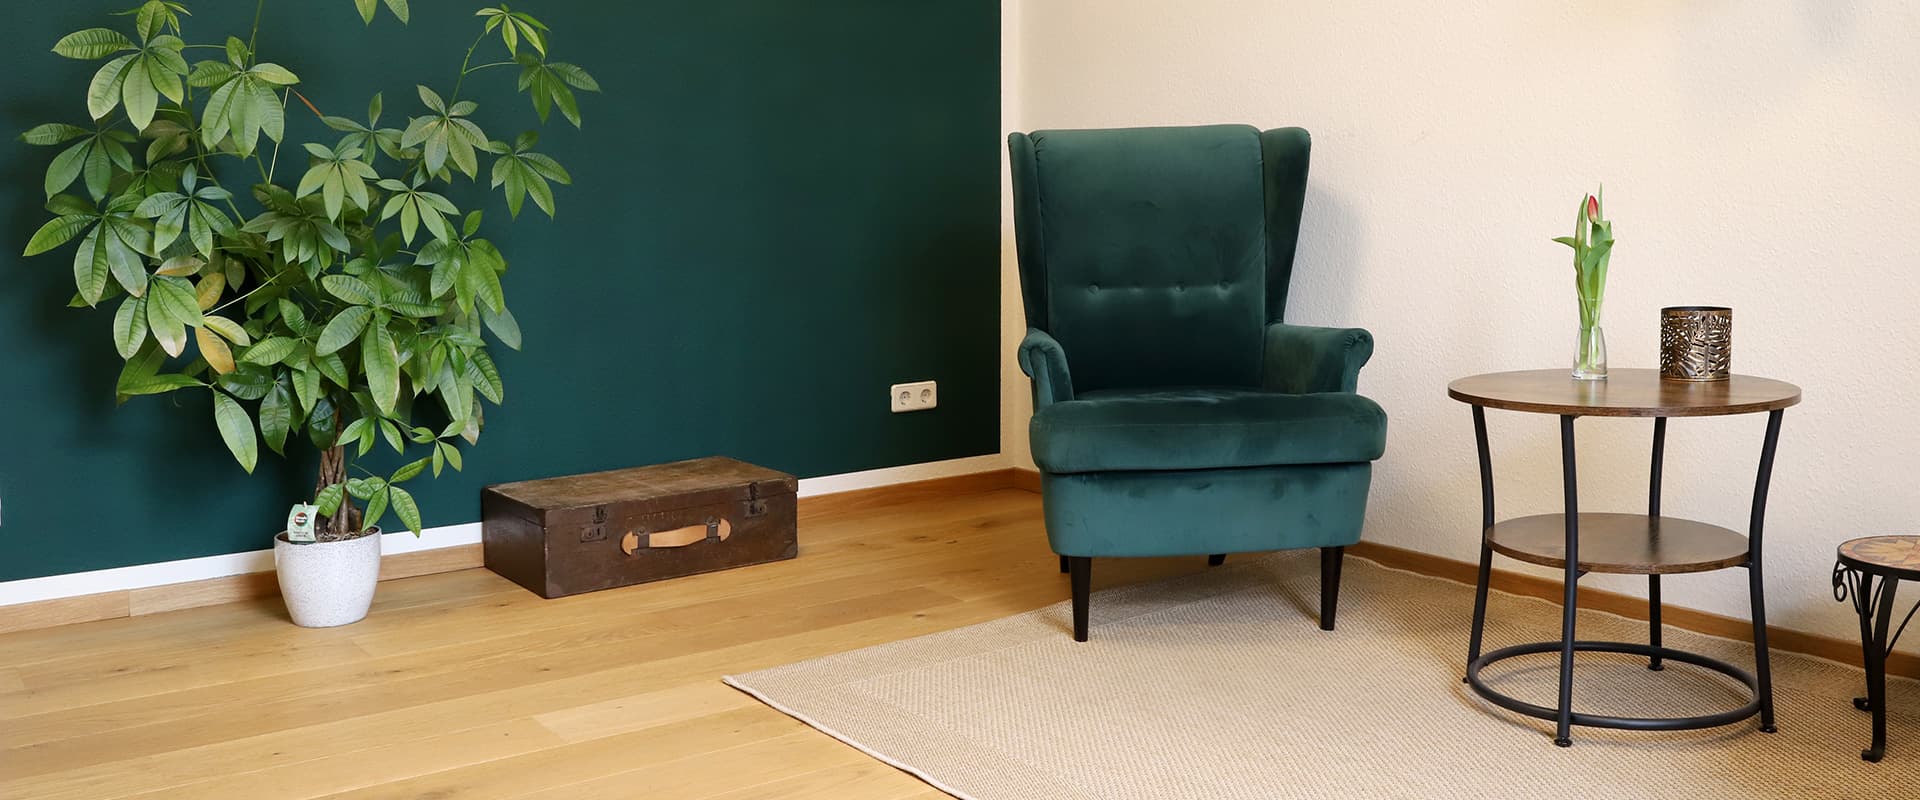 Referenz Praxis für Psychotherapie Peterhänsel Leipzig grüner Sessel in Samtoptik auf einem Teppich, kleiner runder Tisch, einen Koffer sowie eine Pflanze vor einer petrolfarben gestrichenen Wand